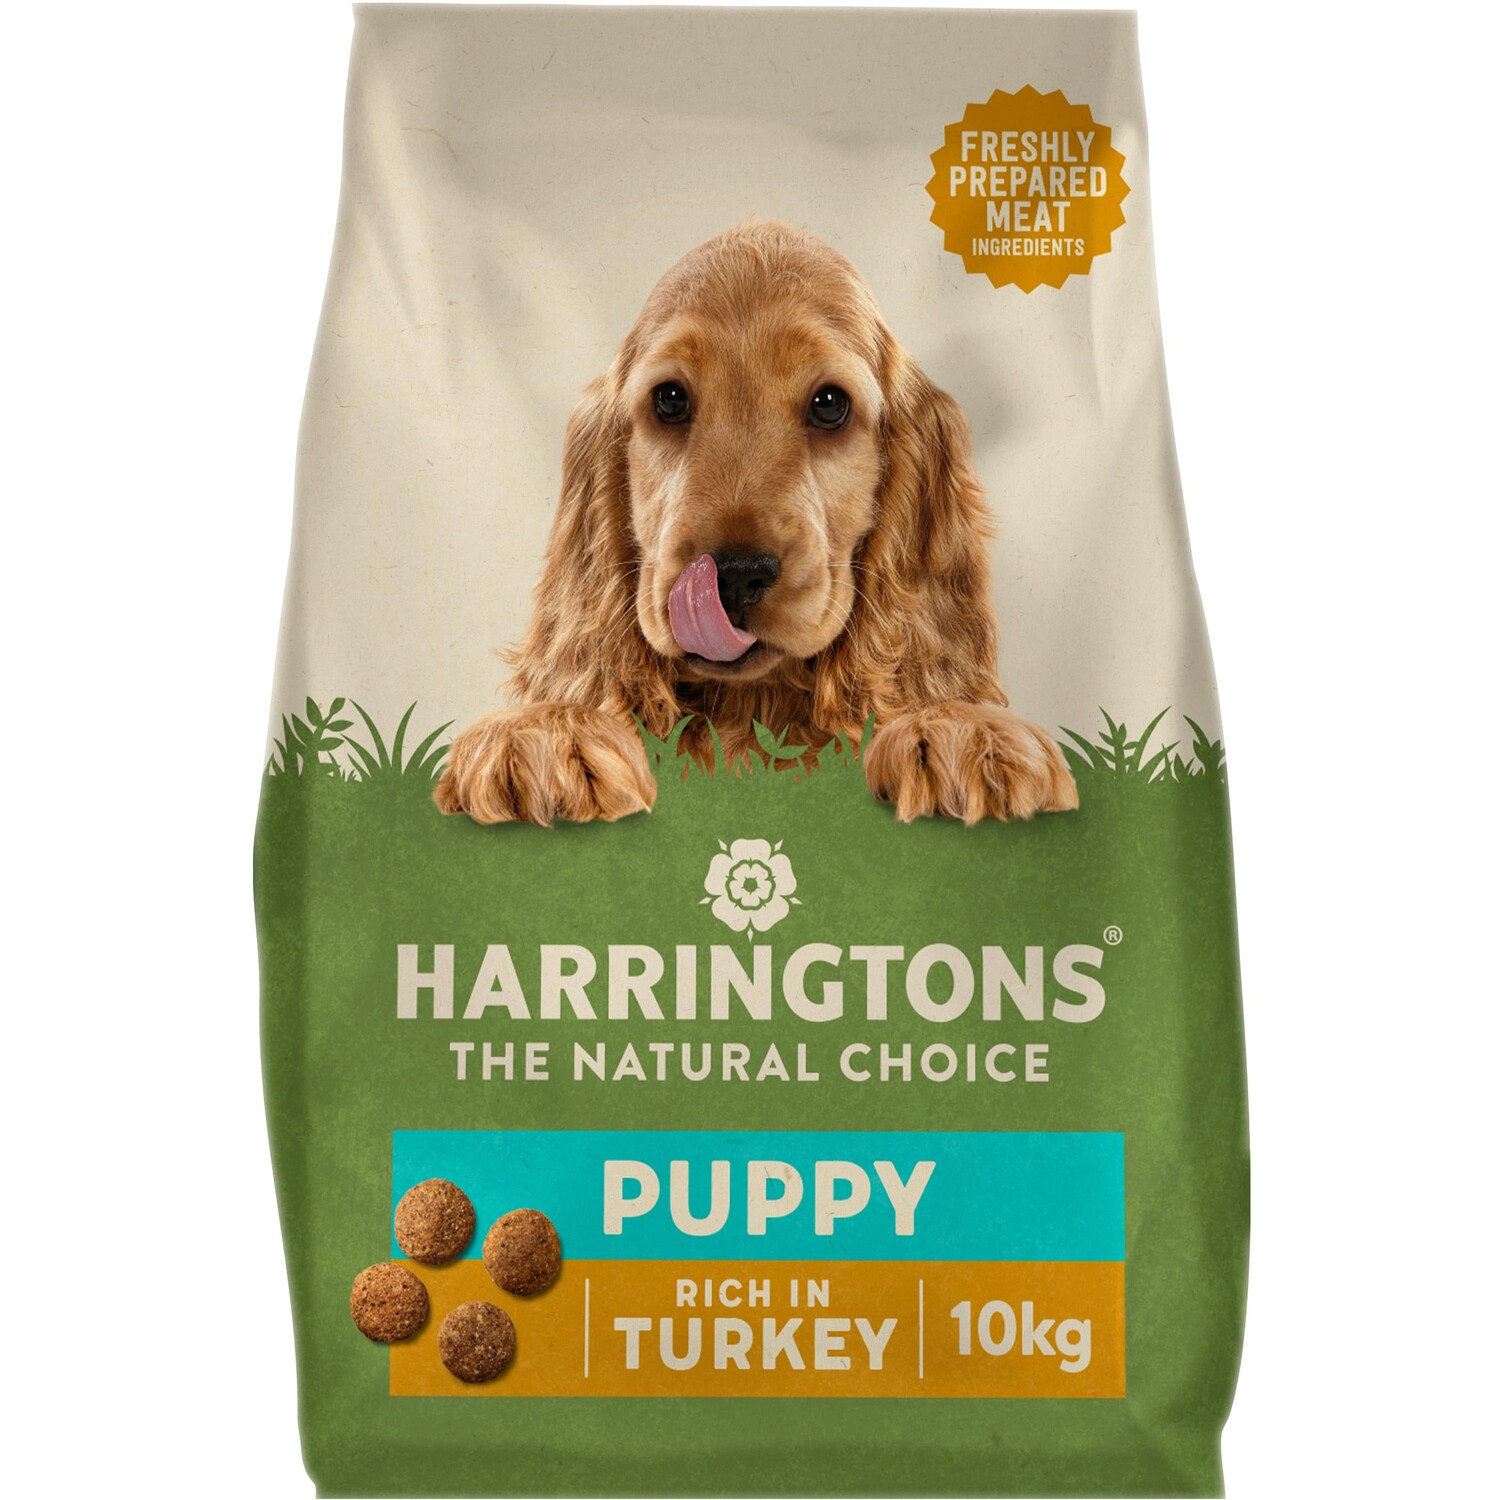 Harringtons Complete Turkey Puppy Food 10kg Image 1